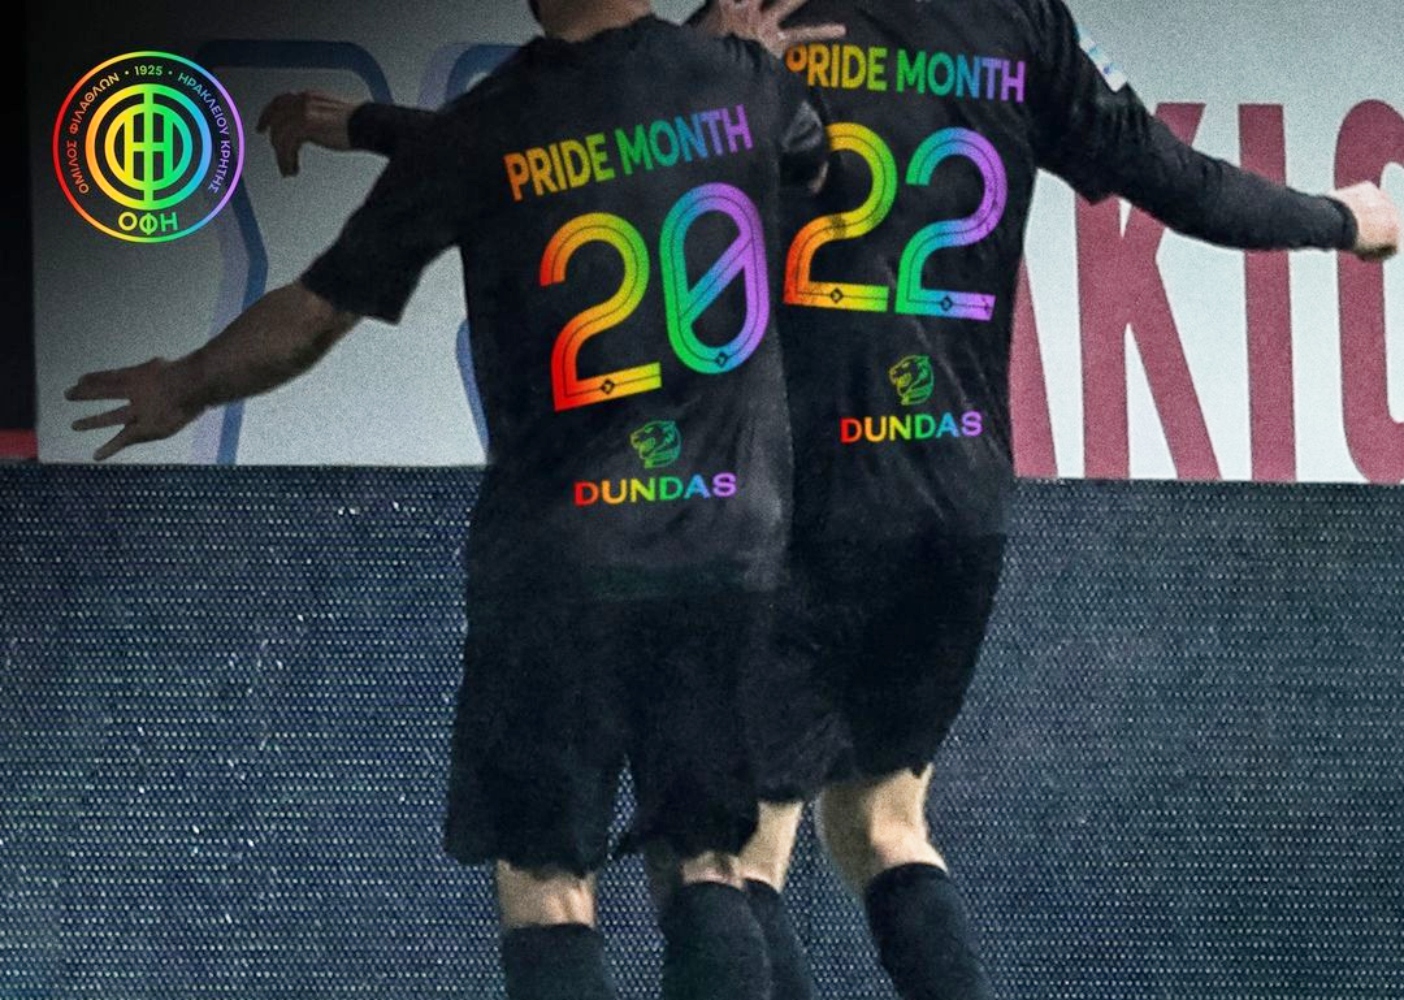 Ο ΟΦΗ ντύνεται στα χρώματα του ουράνιου τόξου για να τιμήσει τη ΛΟΑΤΚΙ+ κοινότητα